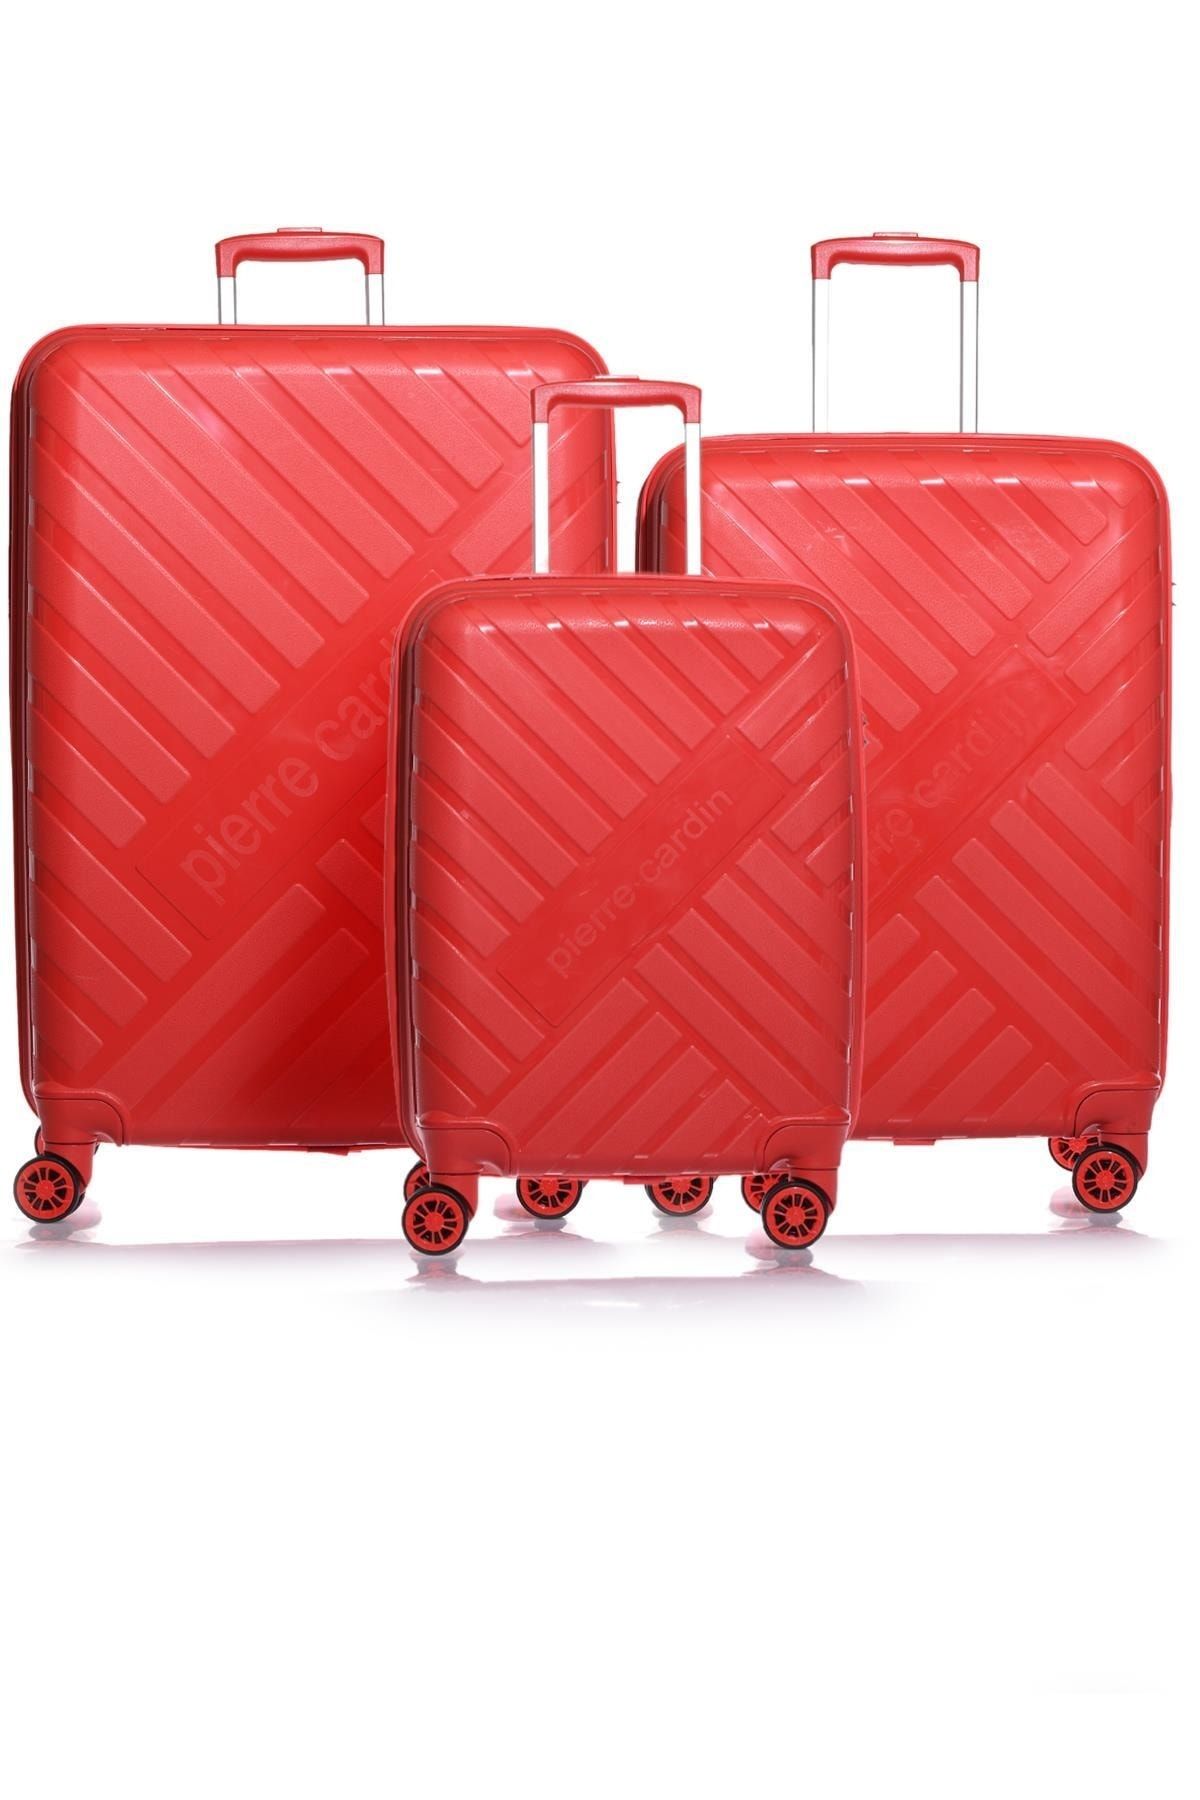 Pierre Cardin 04pc1950-set Kırmızı Unisex 3 Lü Set Bavul